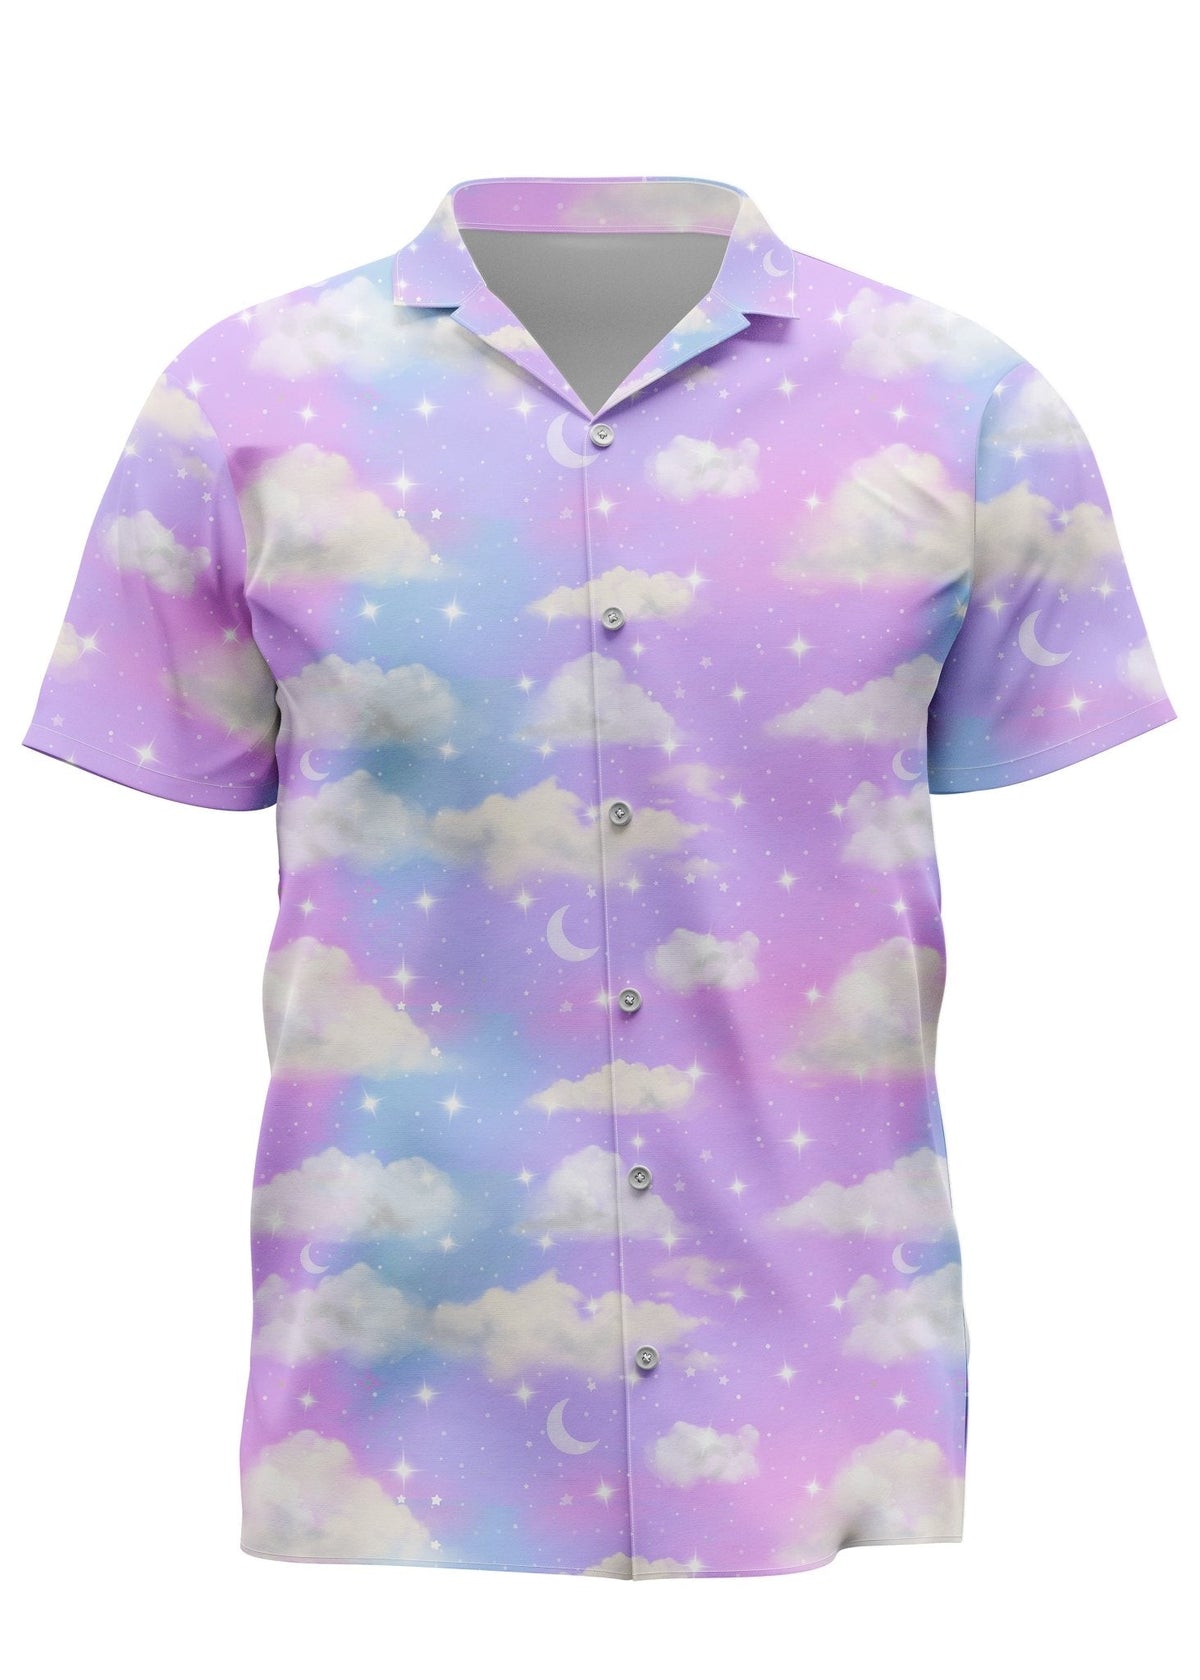 Angelic Sky Hawaiian Shirt - In Control Clothing